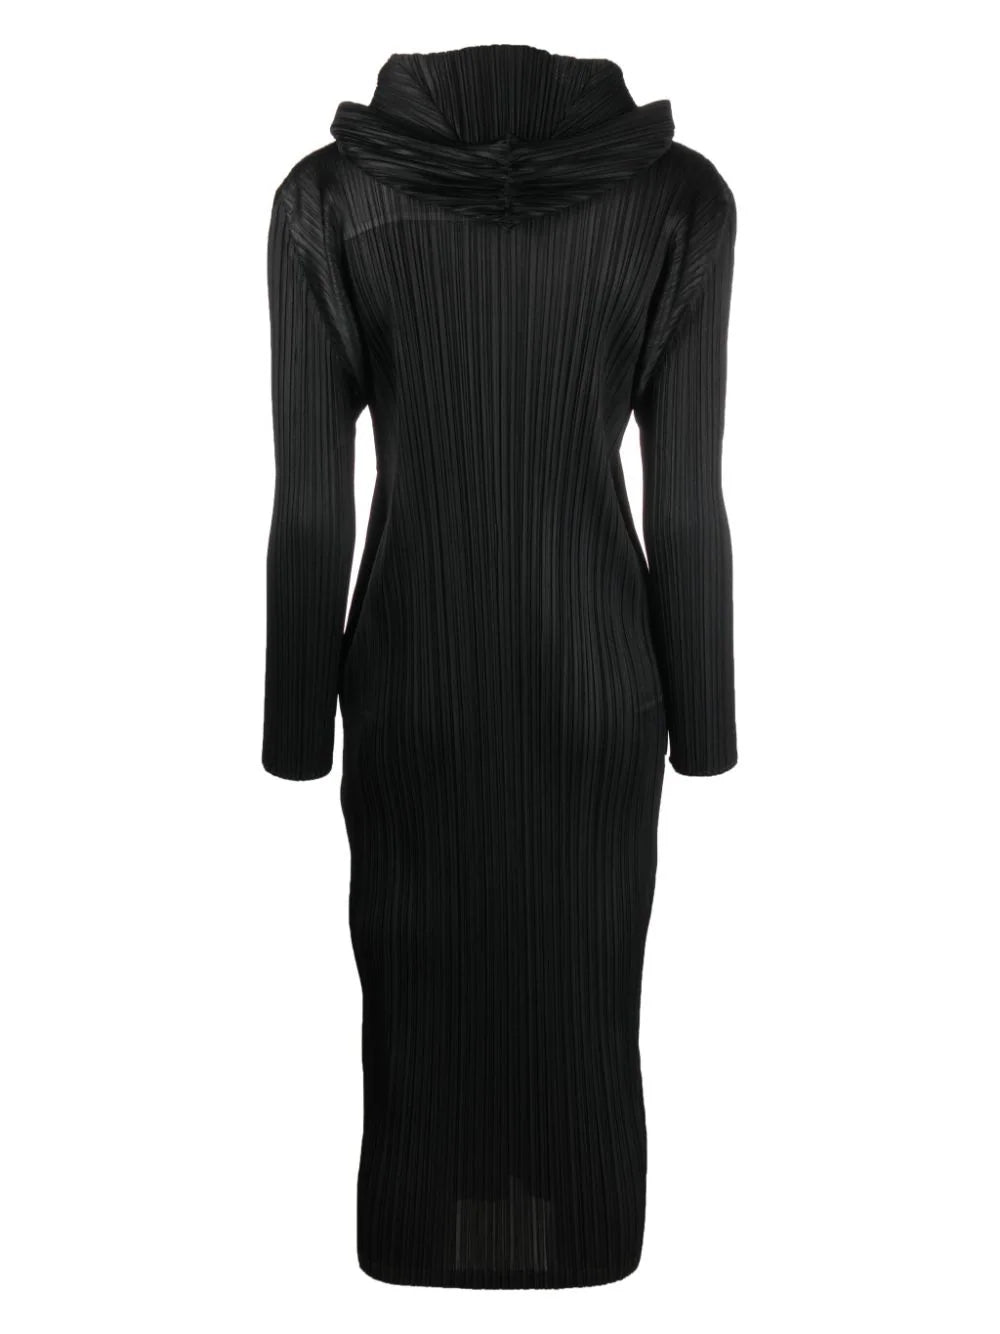 Pleated hooded long-sleeve midi dress, black